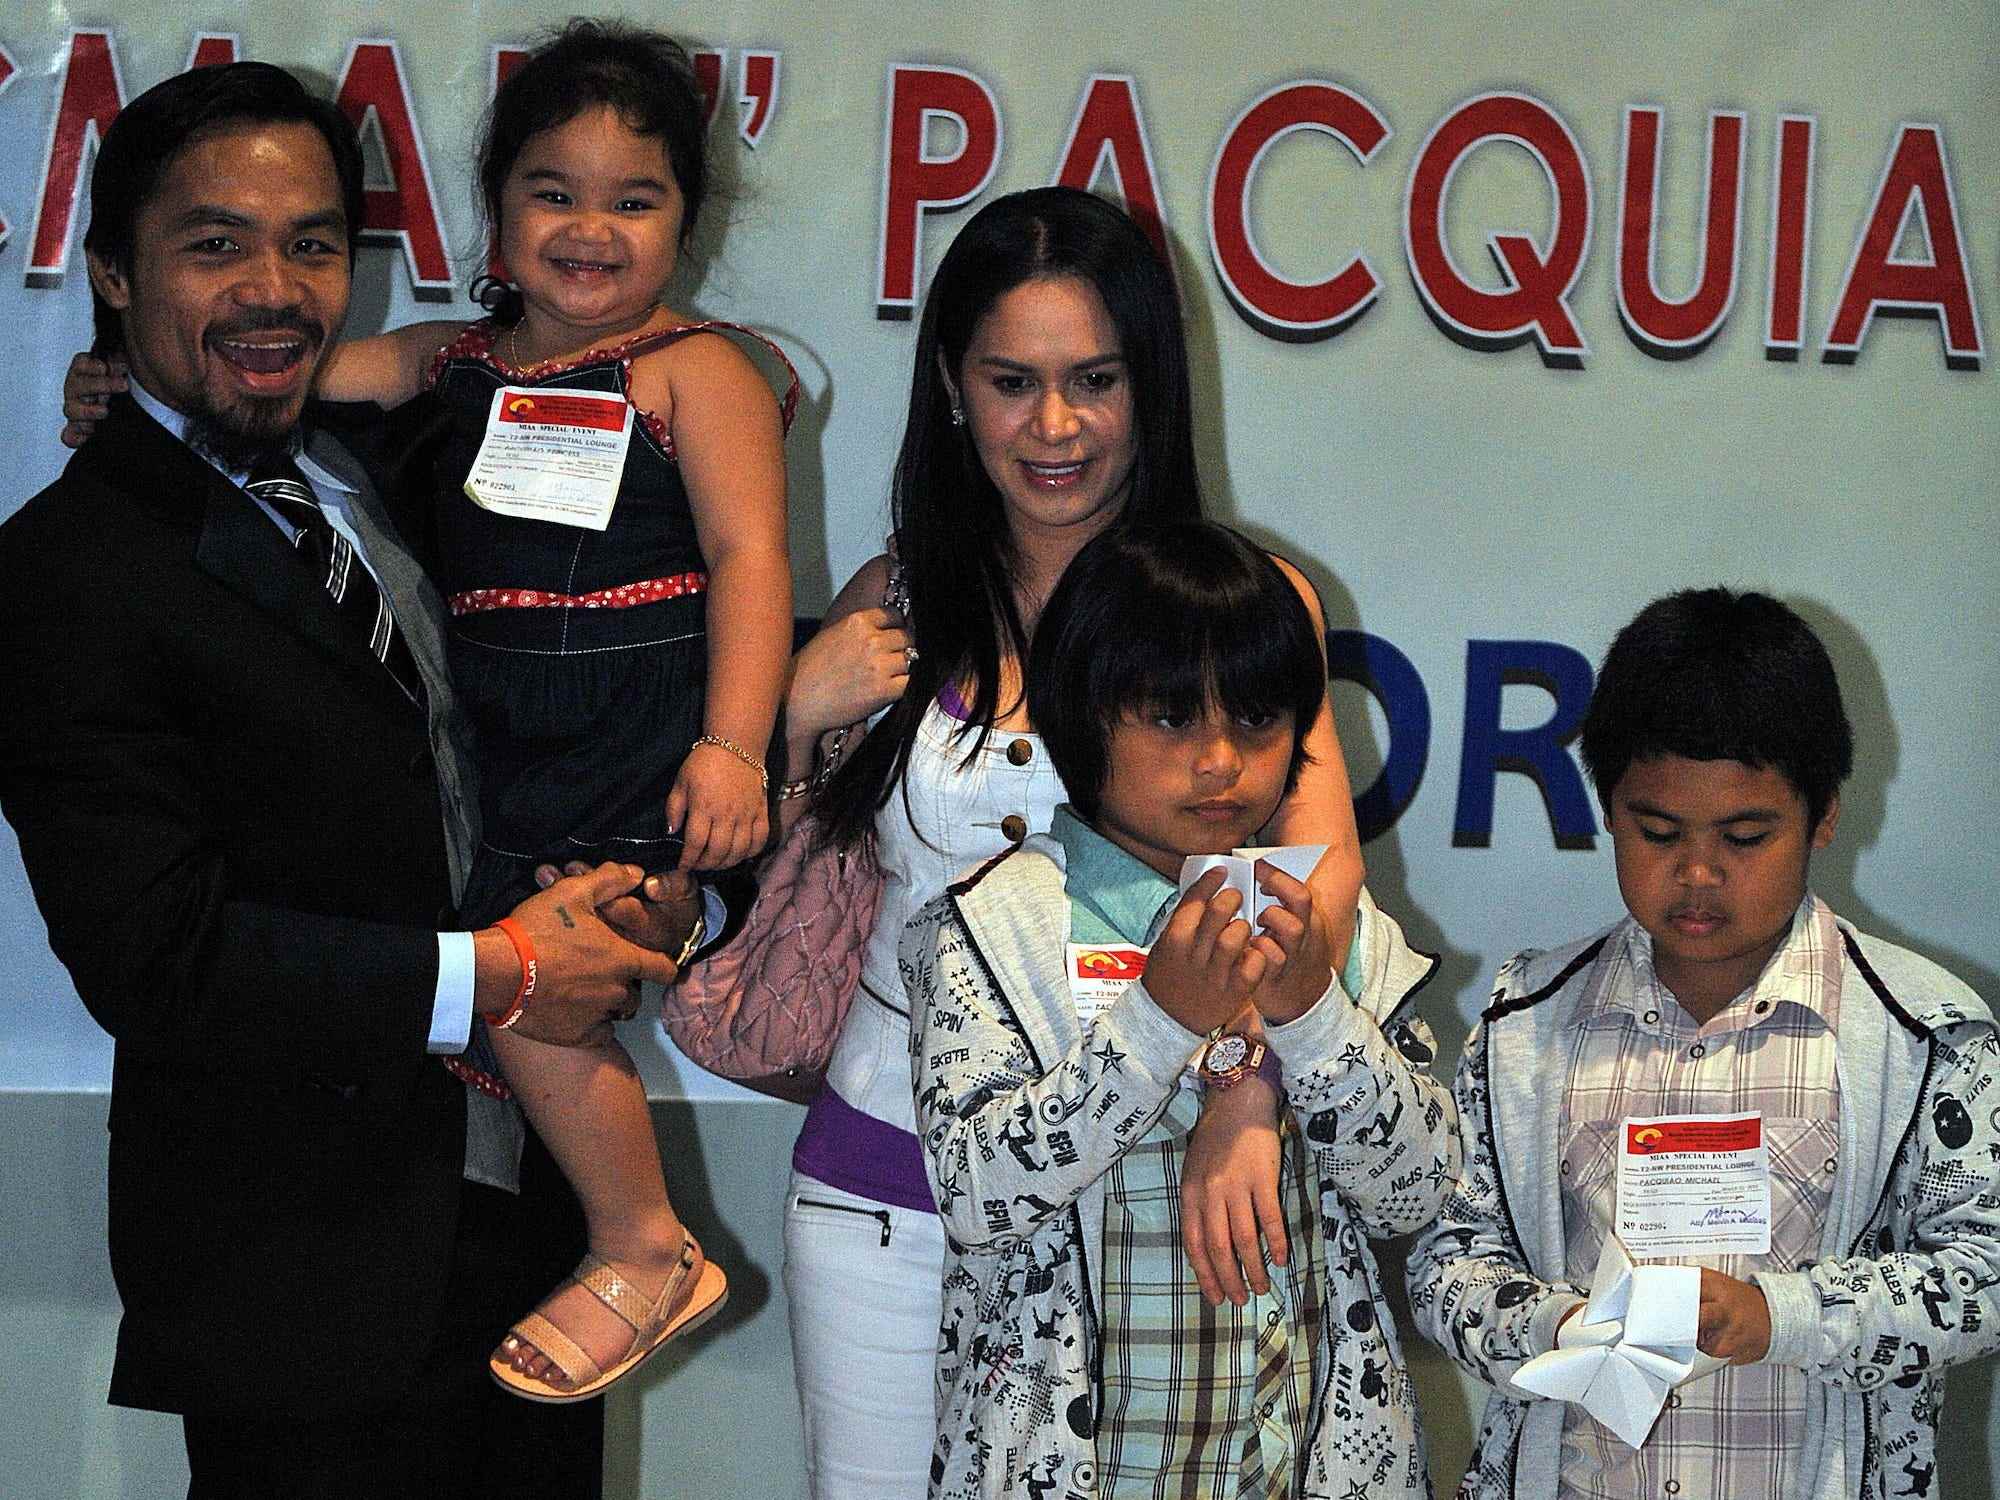 Manny Pacquiao und seine Familie.  Jimuel ist in der Mitte.